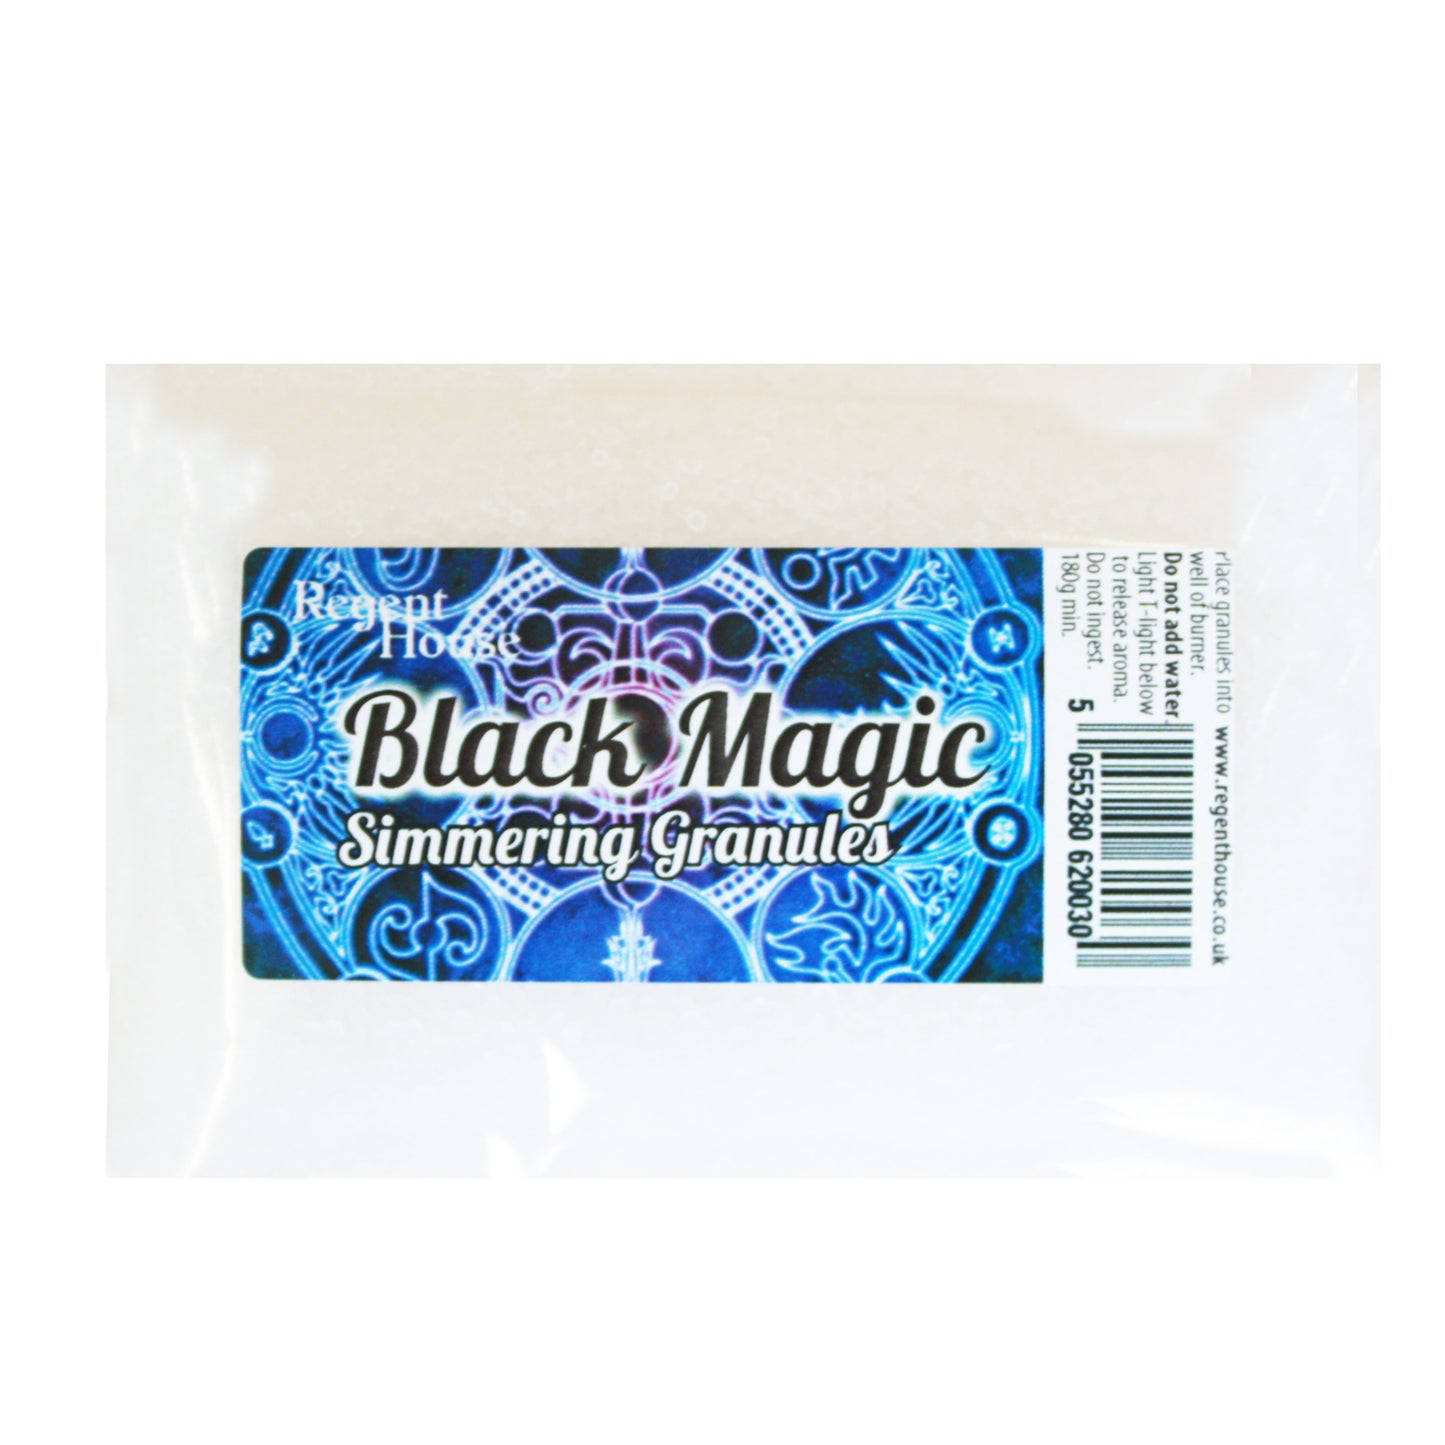 Black Magic Simmering Granules